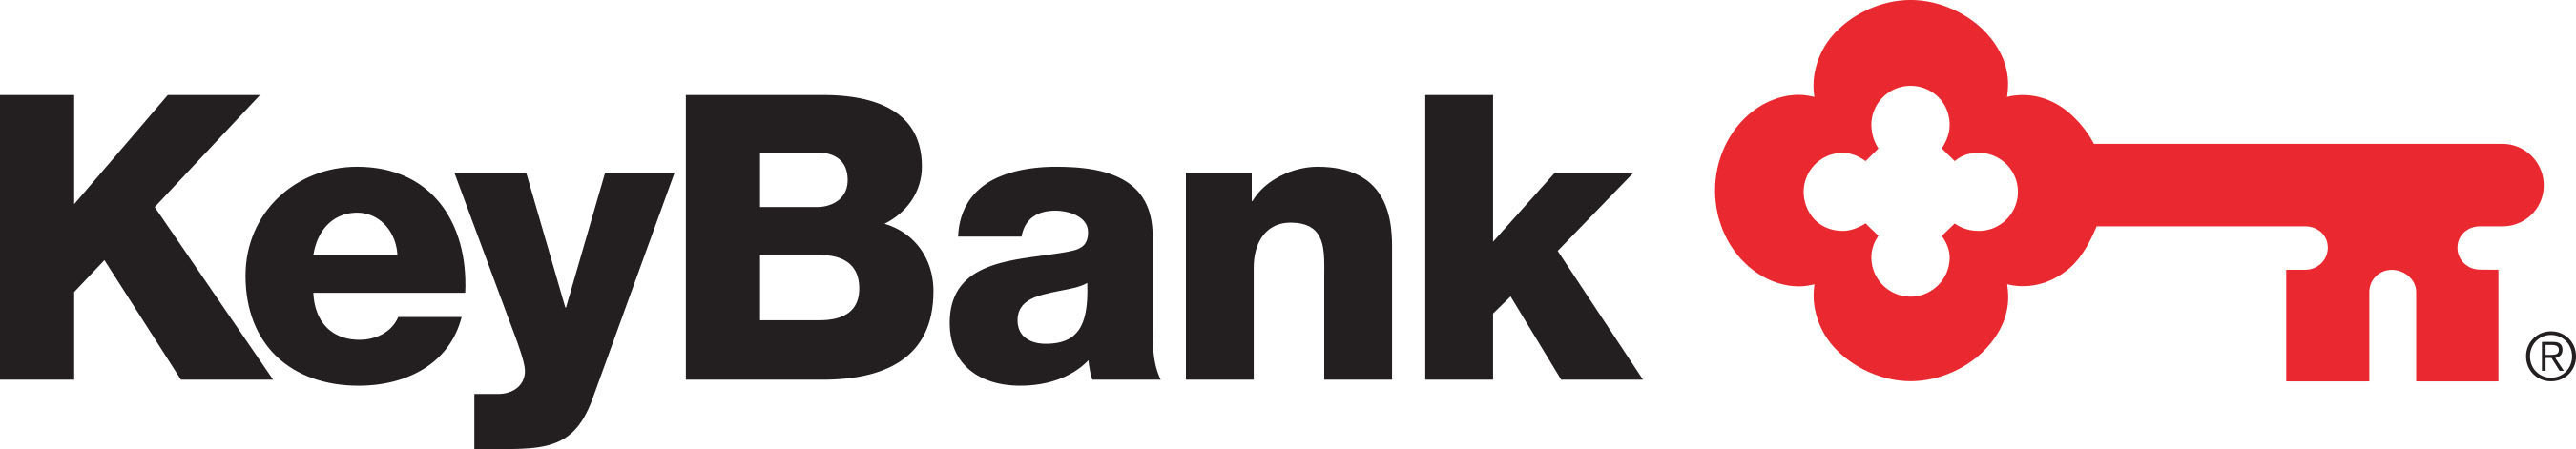 Keybank Logos